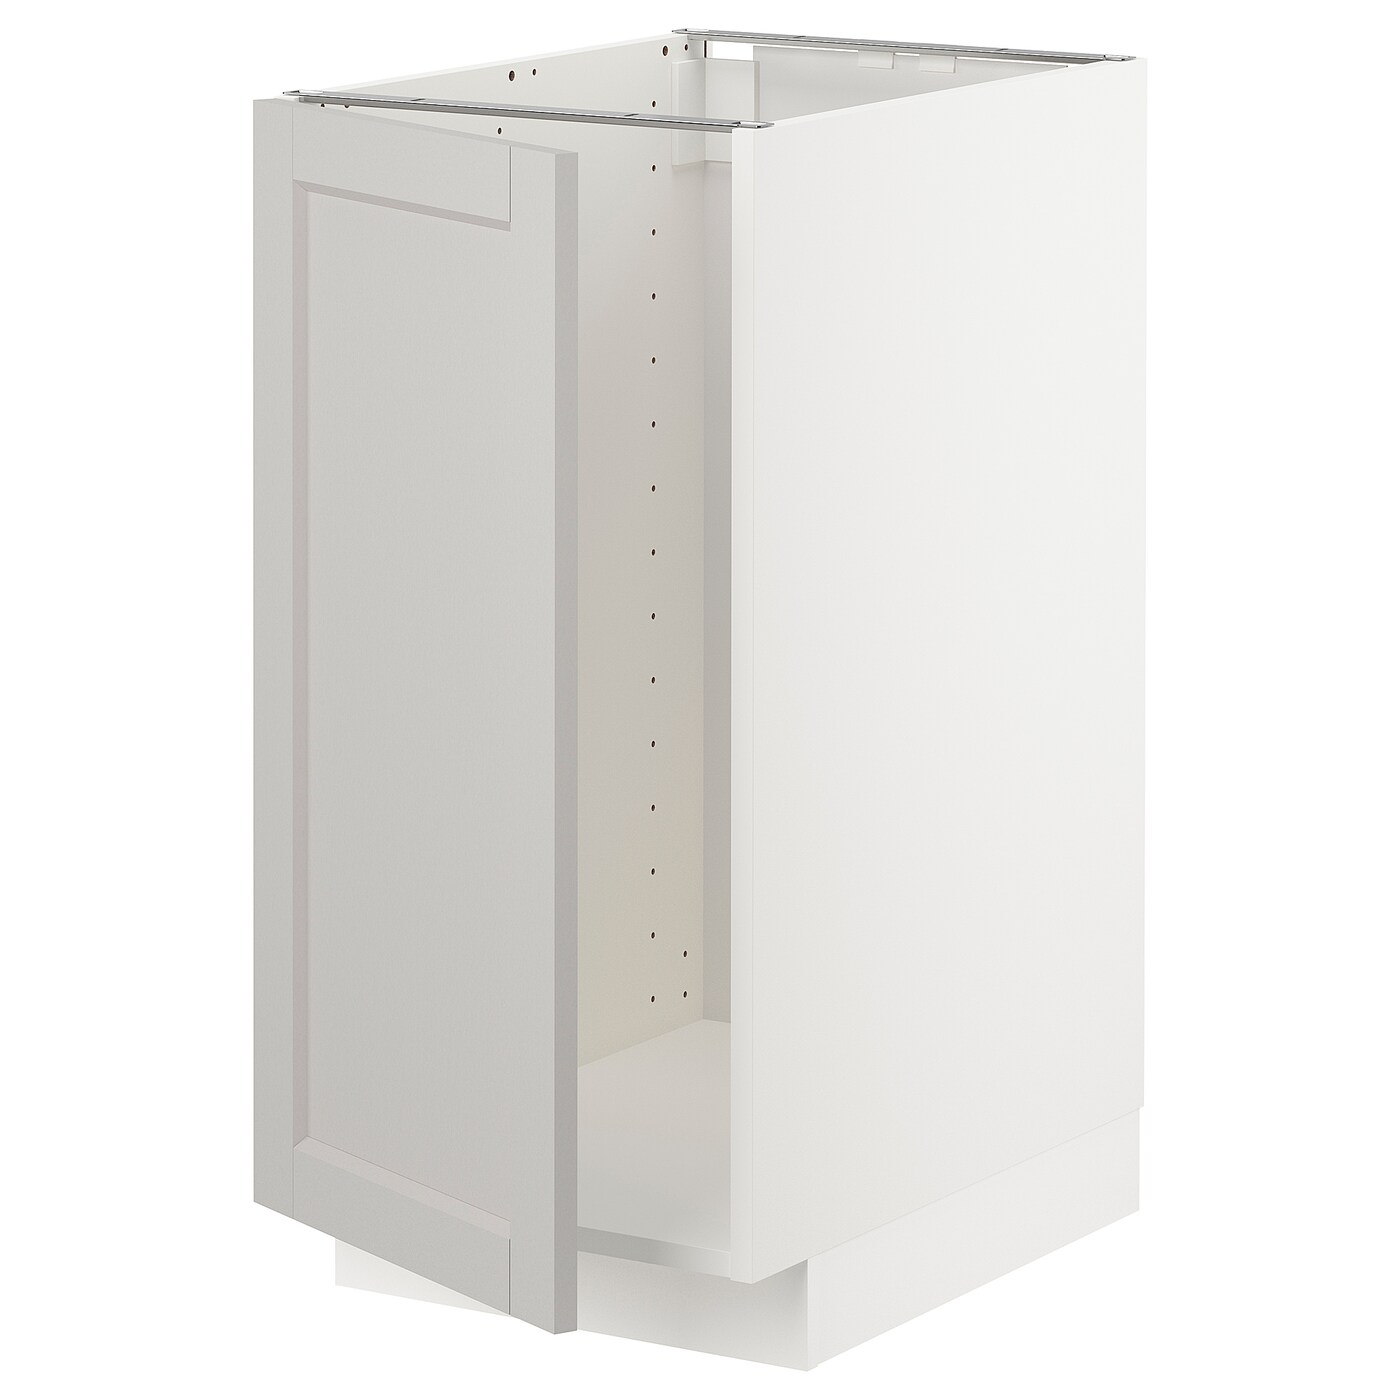 Напольный кухонный шкаф  - IKEA METOD, 88x62x40см, белый/светло-серый, МЕТОД ИКЕА